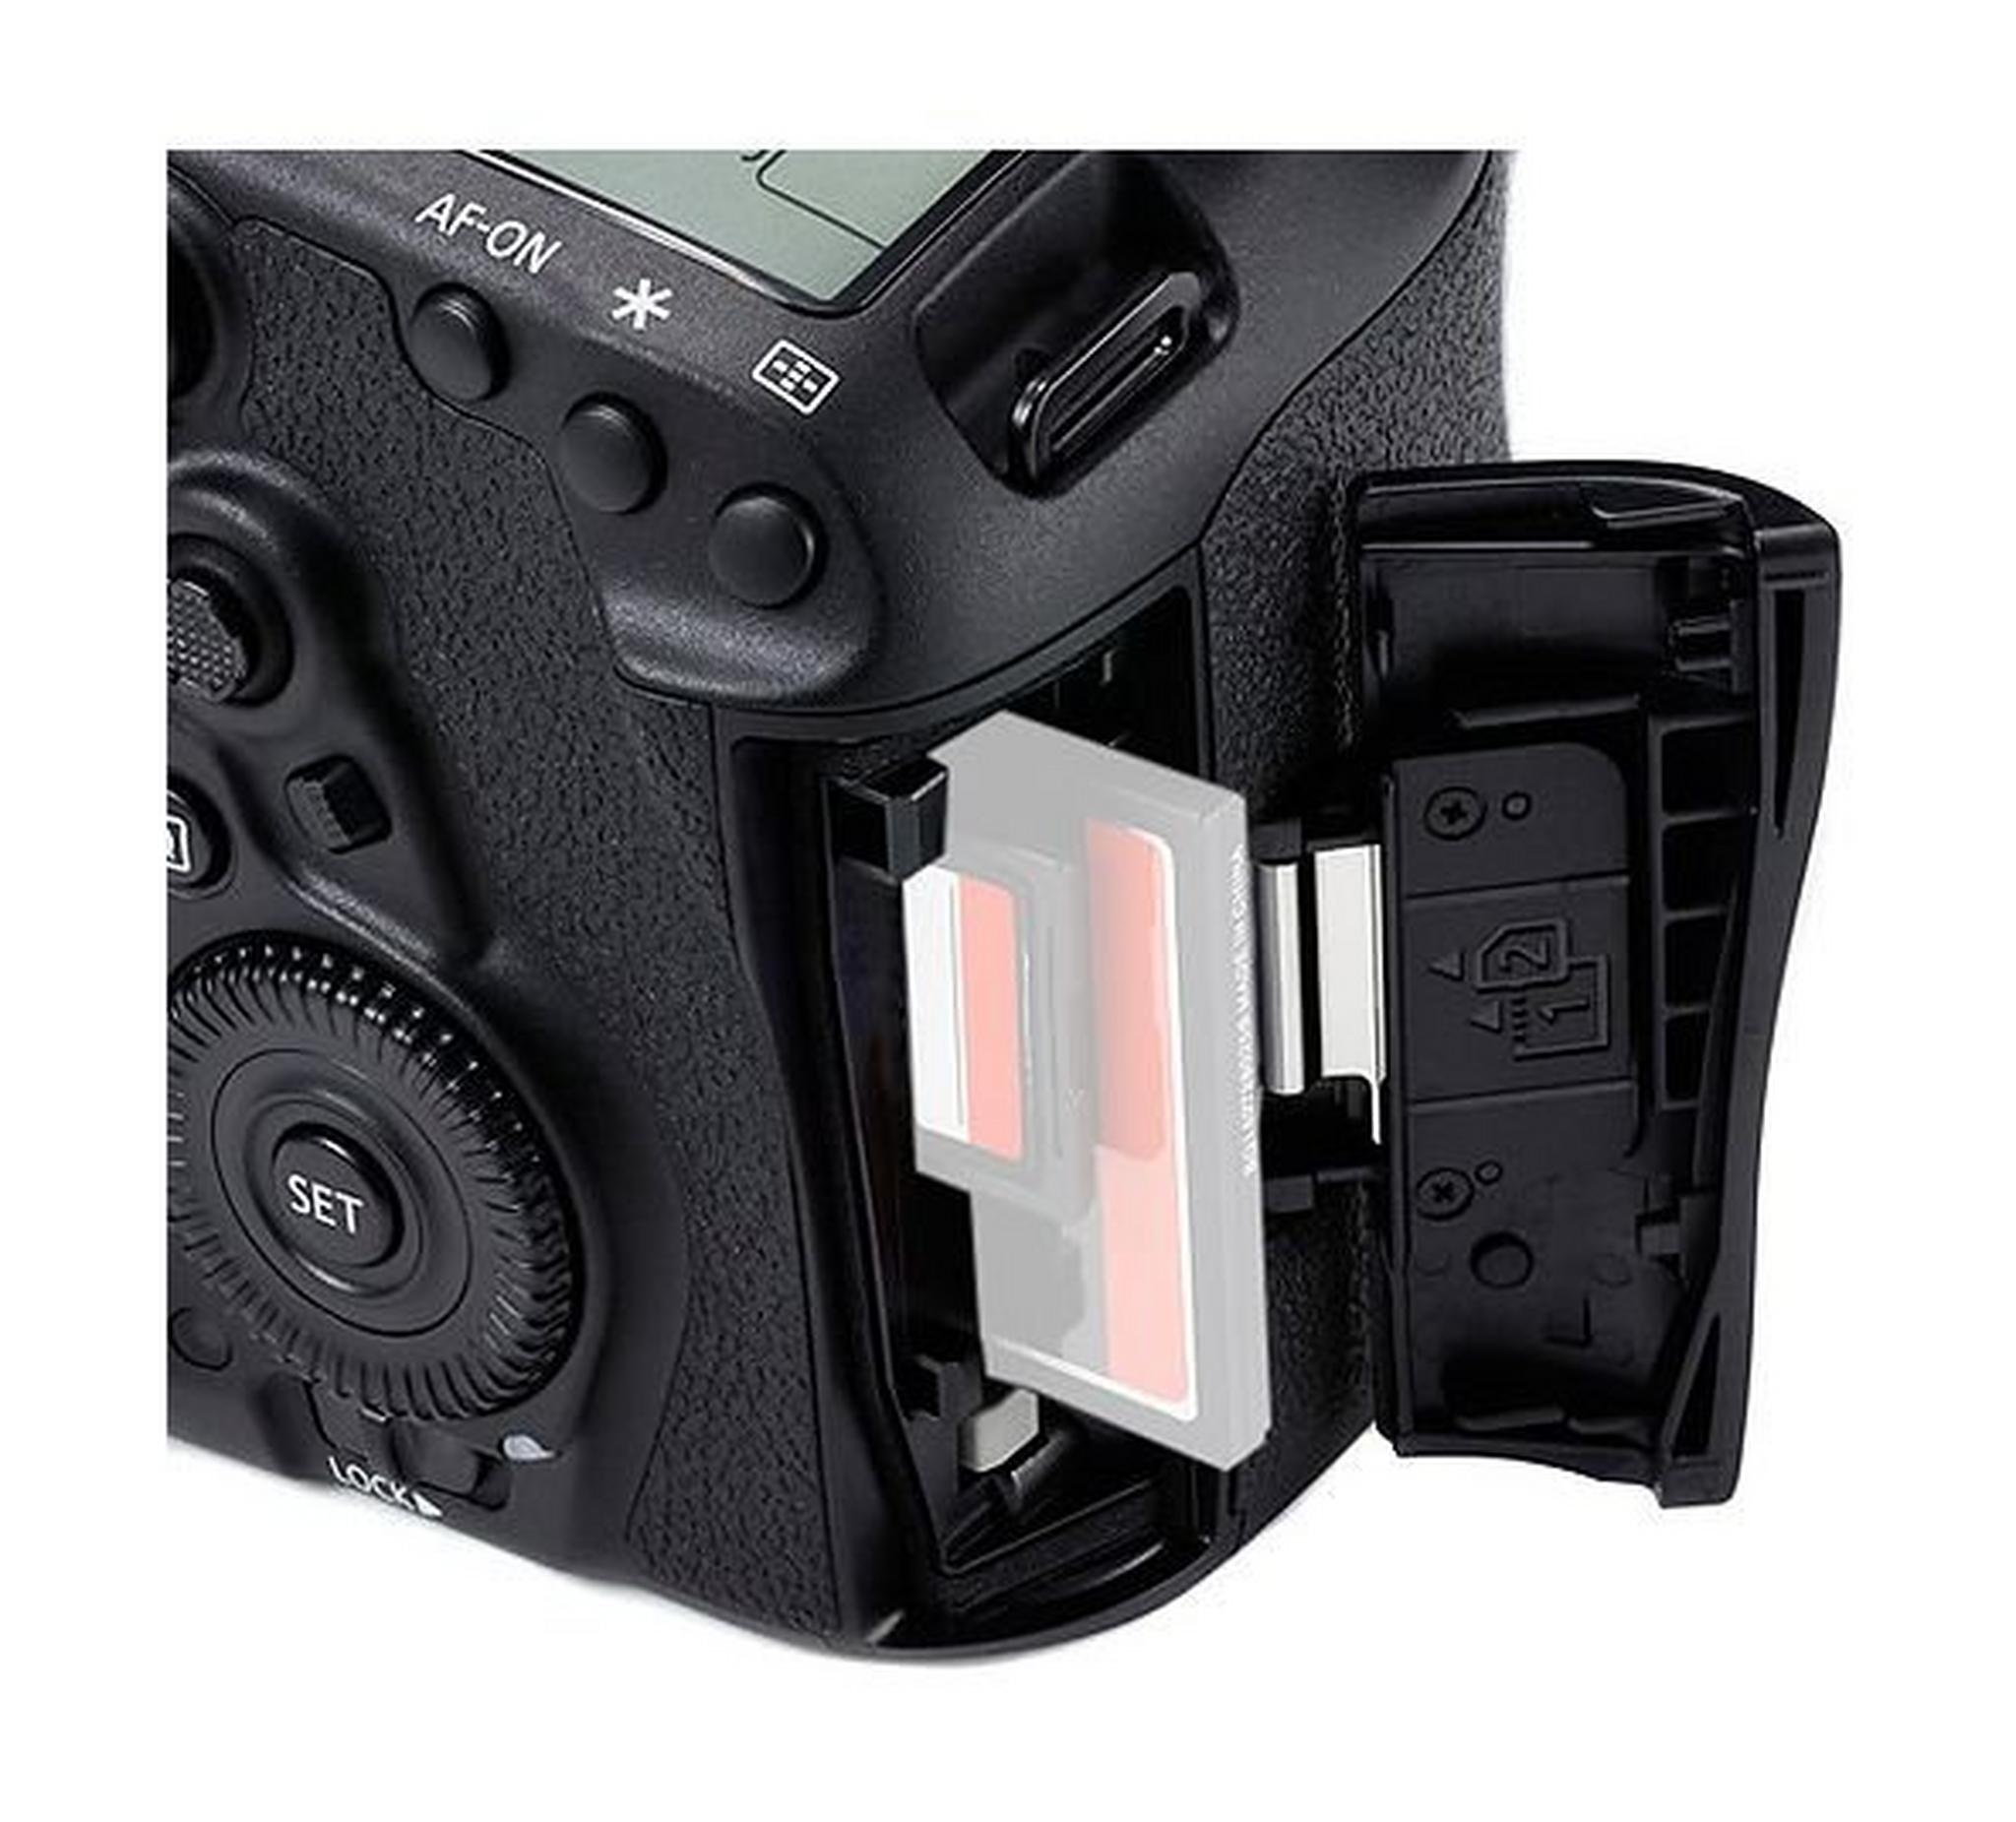 كاميرا كانون ٥ دي مارك ٤ الرقمية إس إل آر بدقة ٣٠,٤ ميجابكسل - ٤ كي - واي فاي - الهيكل فقط (EOS 5D Mark IV)